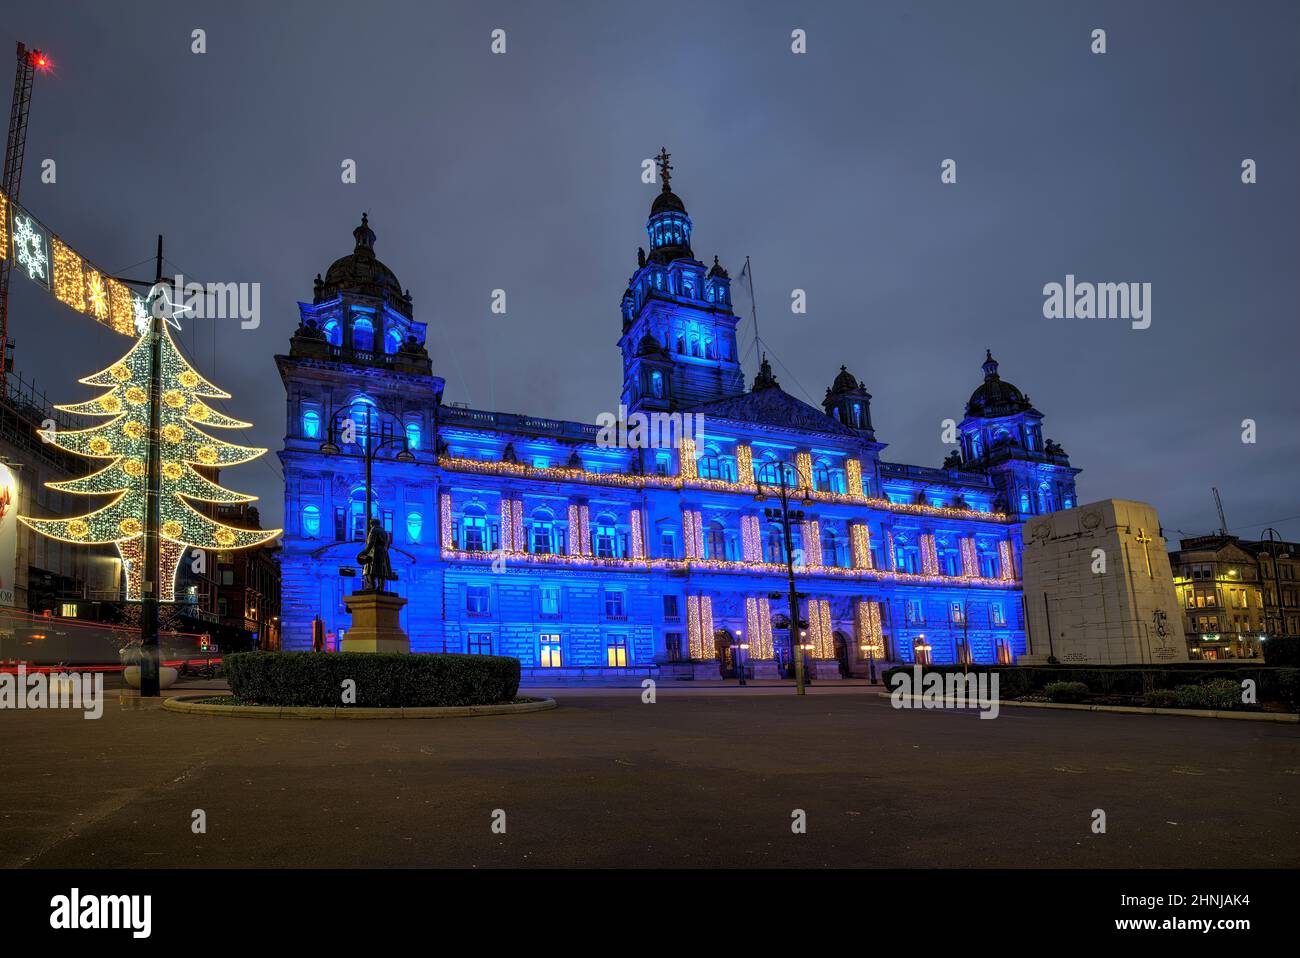 Glasgow City Chambers à George Square a allumé ip pendant l'événement illuminé de Glasgow. Banque D'Images